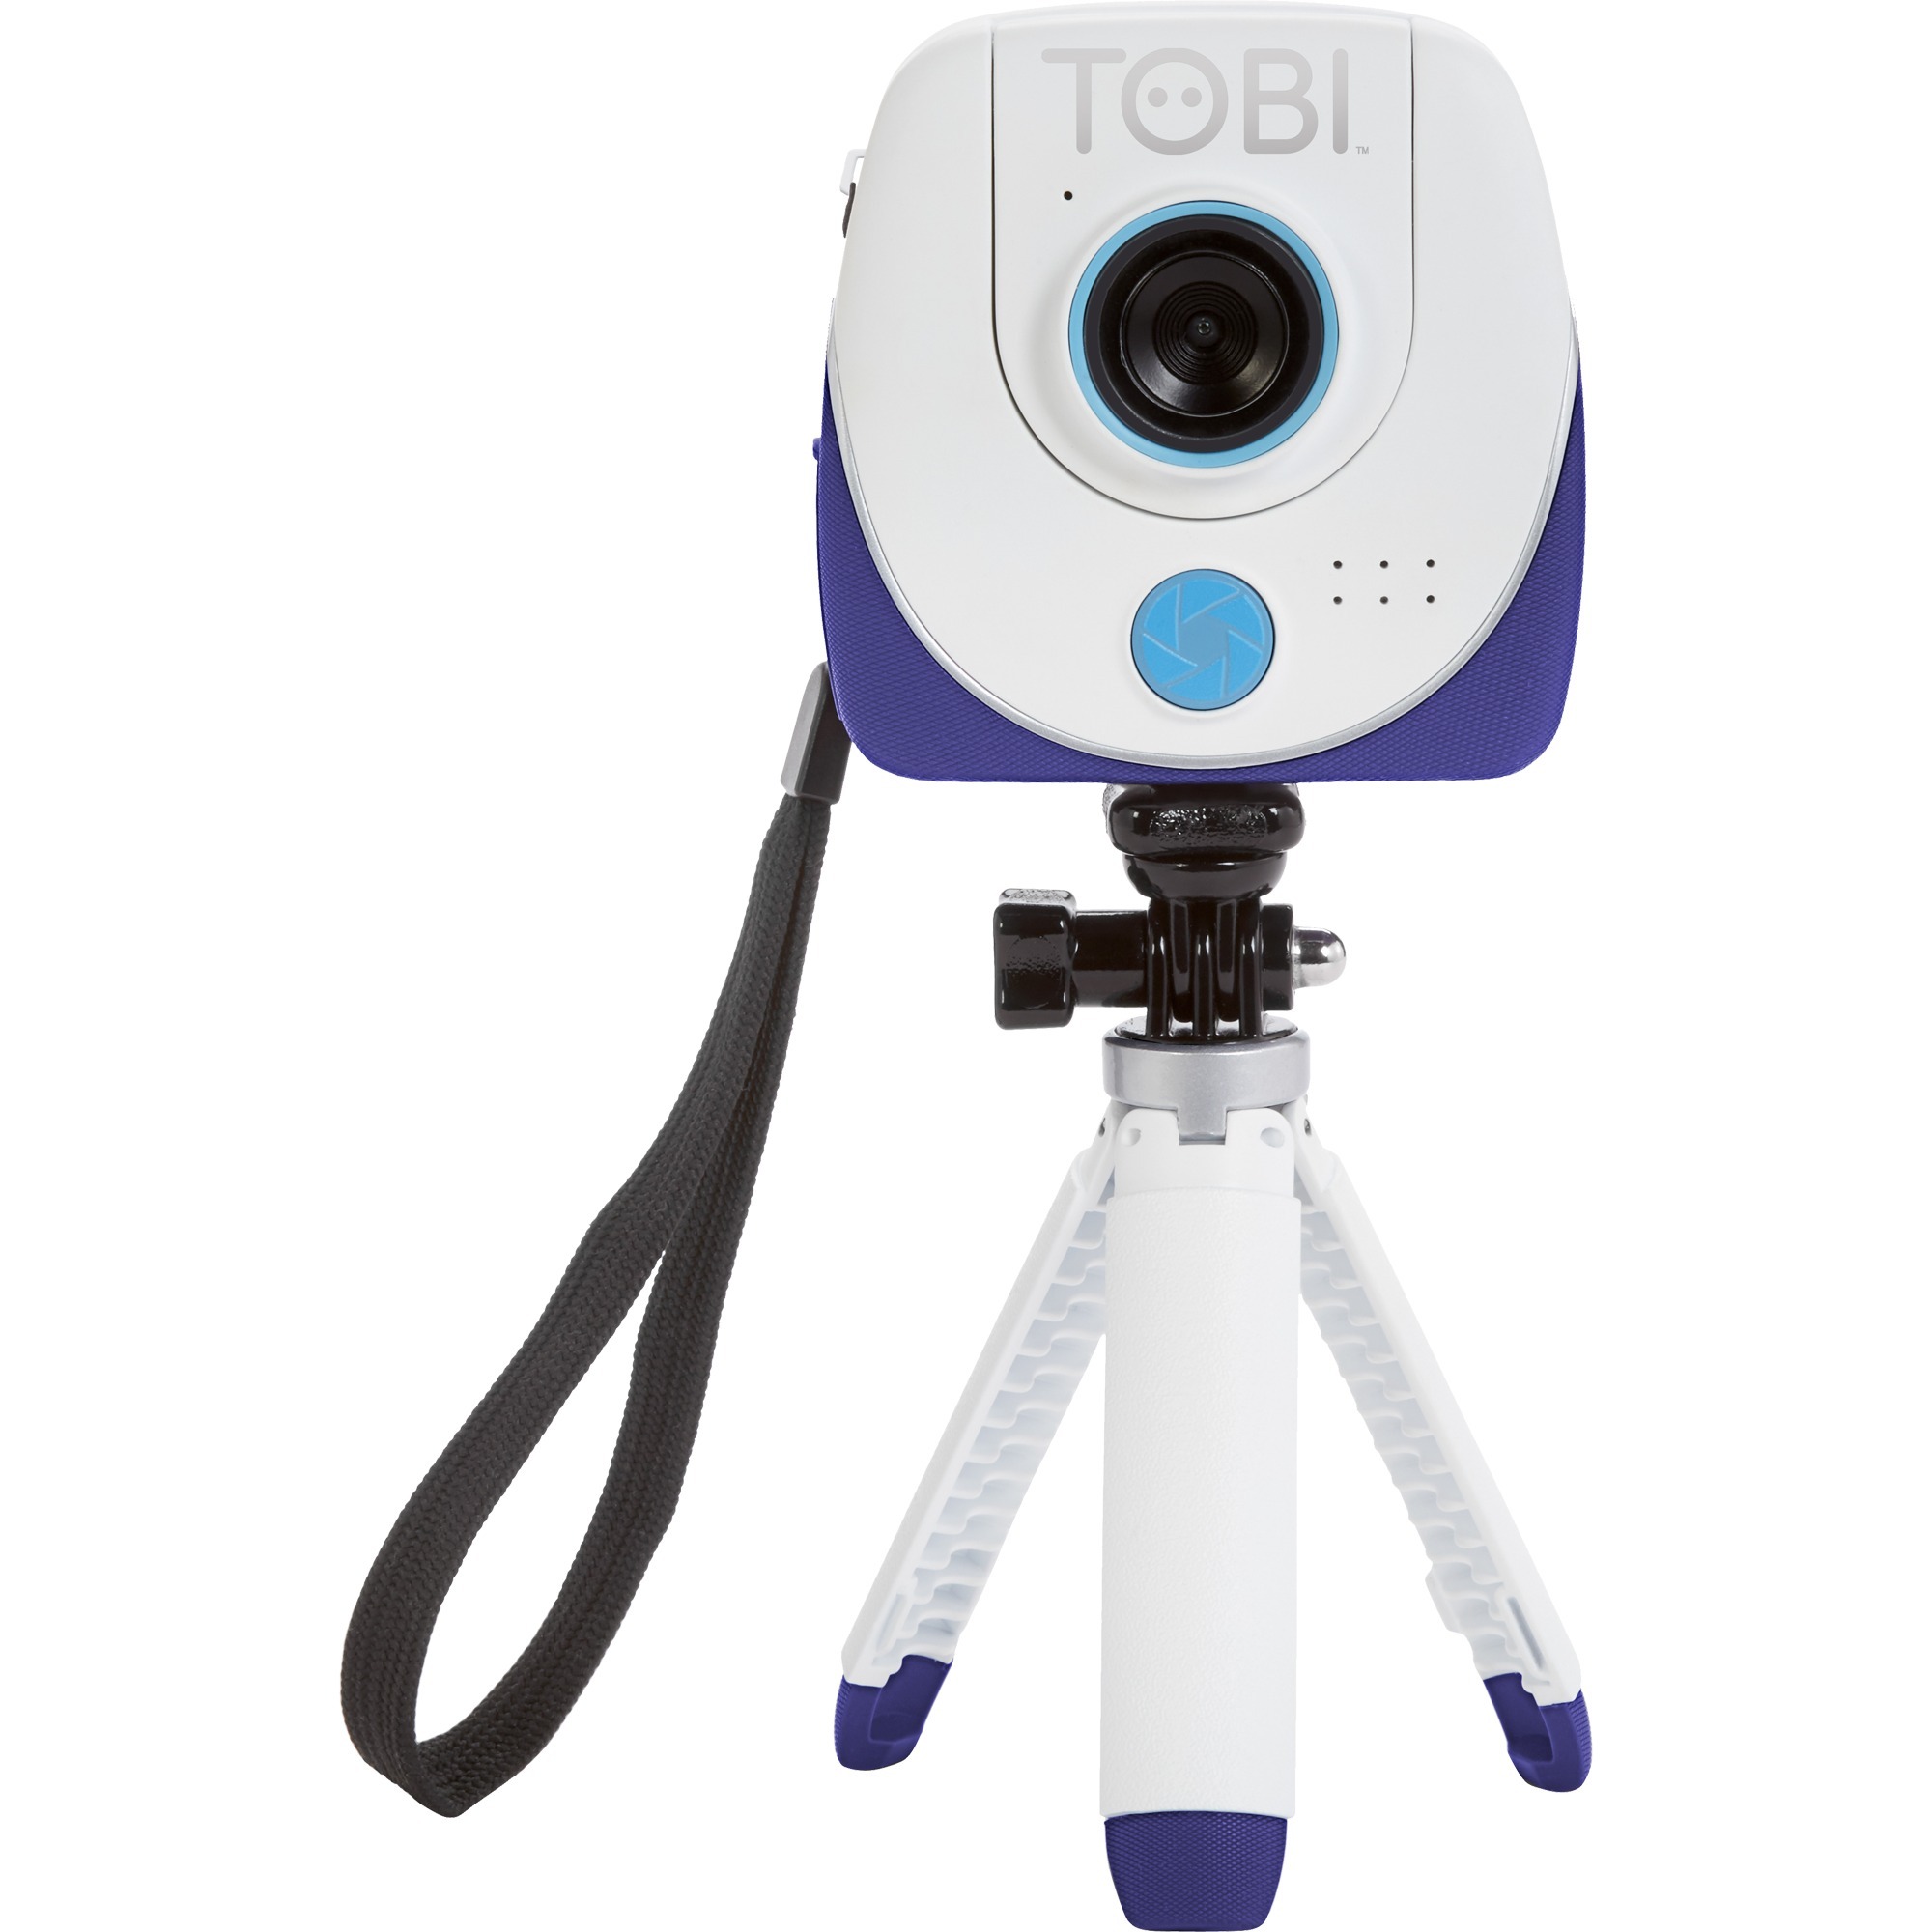 Image of Alternate - Tobi 2 Director''s Camera, Videokamera online einkaufen bei Alternate